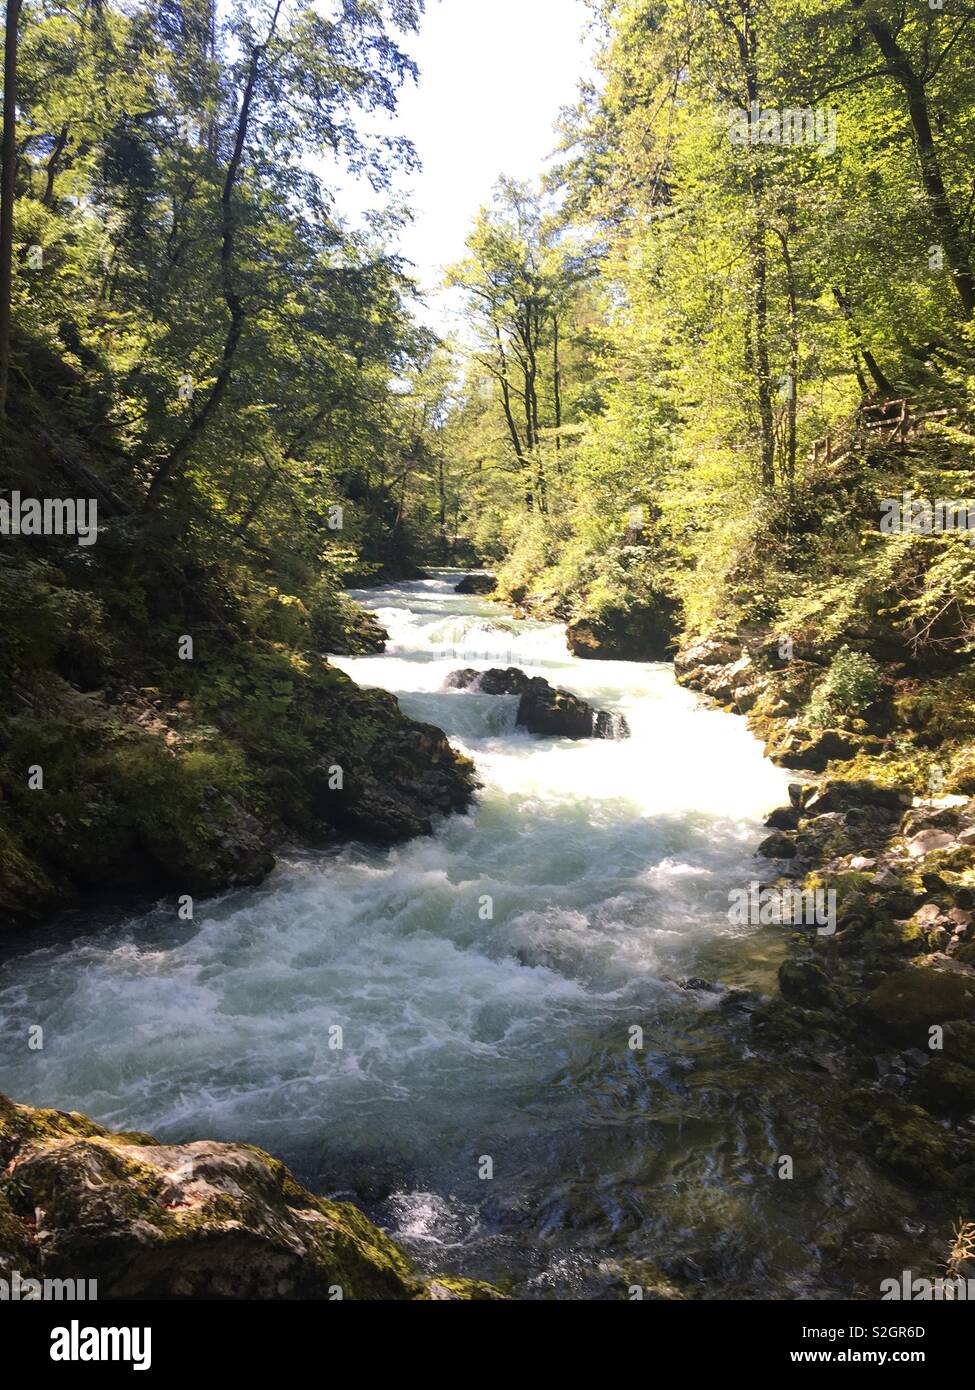 Rushing water in Slovenia Stock Photo